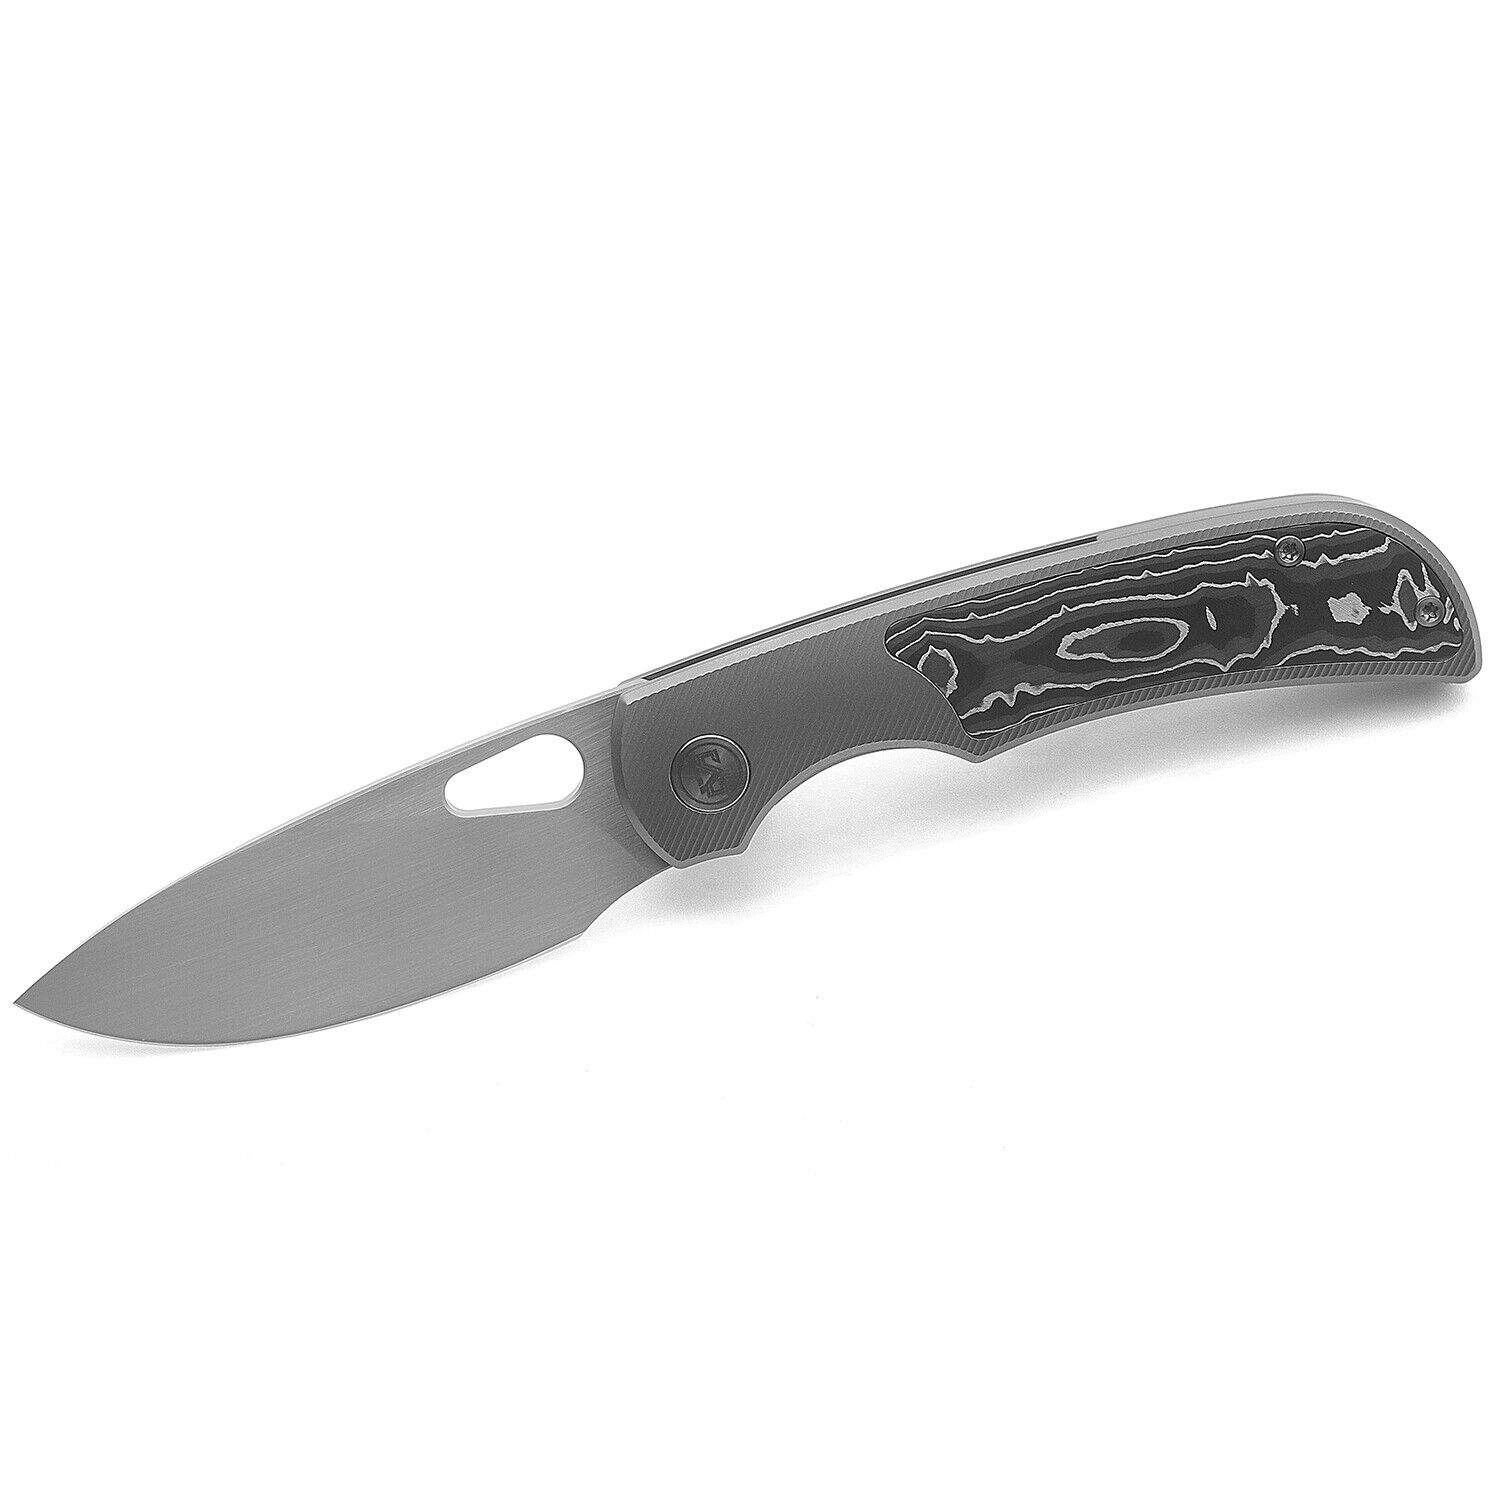 Miguron Moyarl Pocket Knife Titanium Silver Carbon Fiber Handle M390 MGR-621CSR